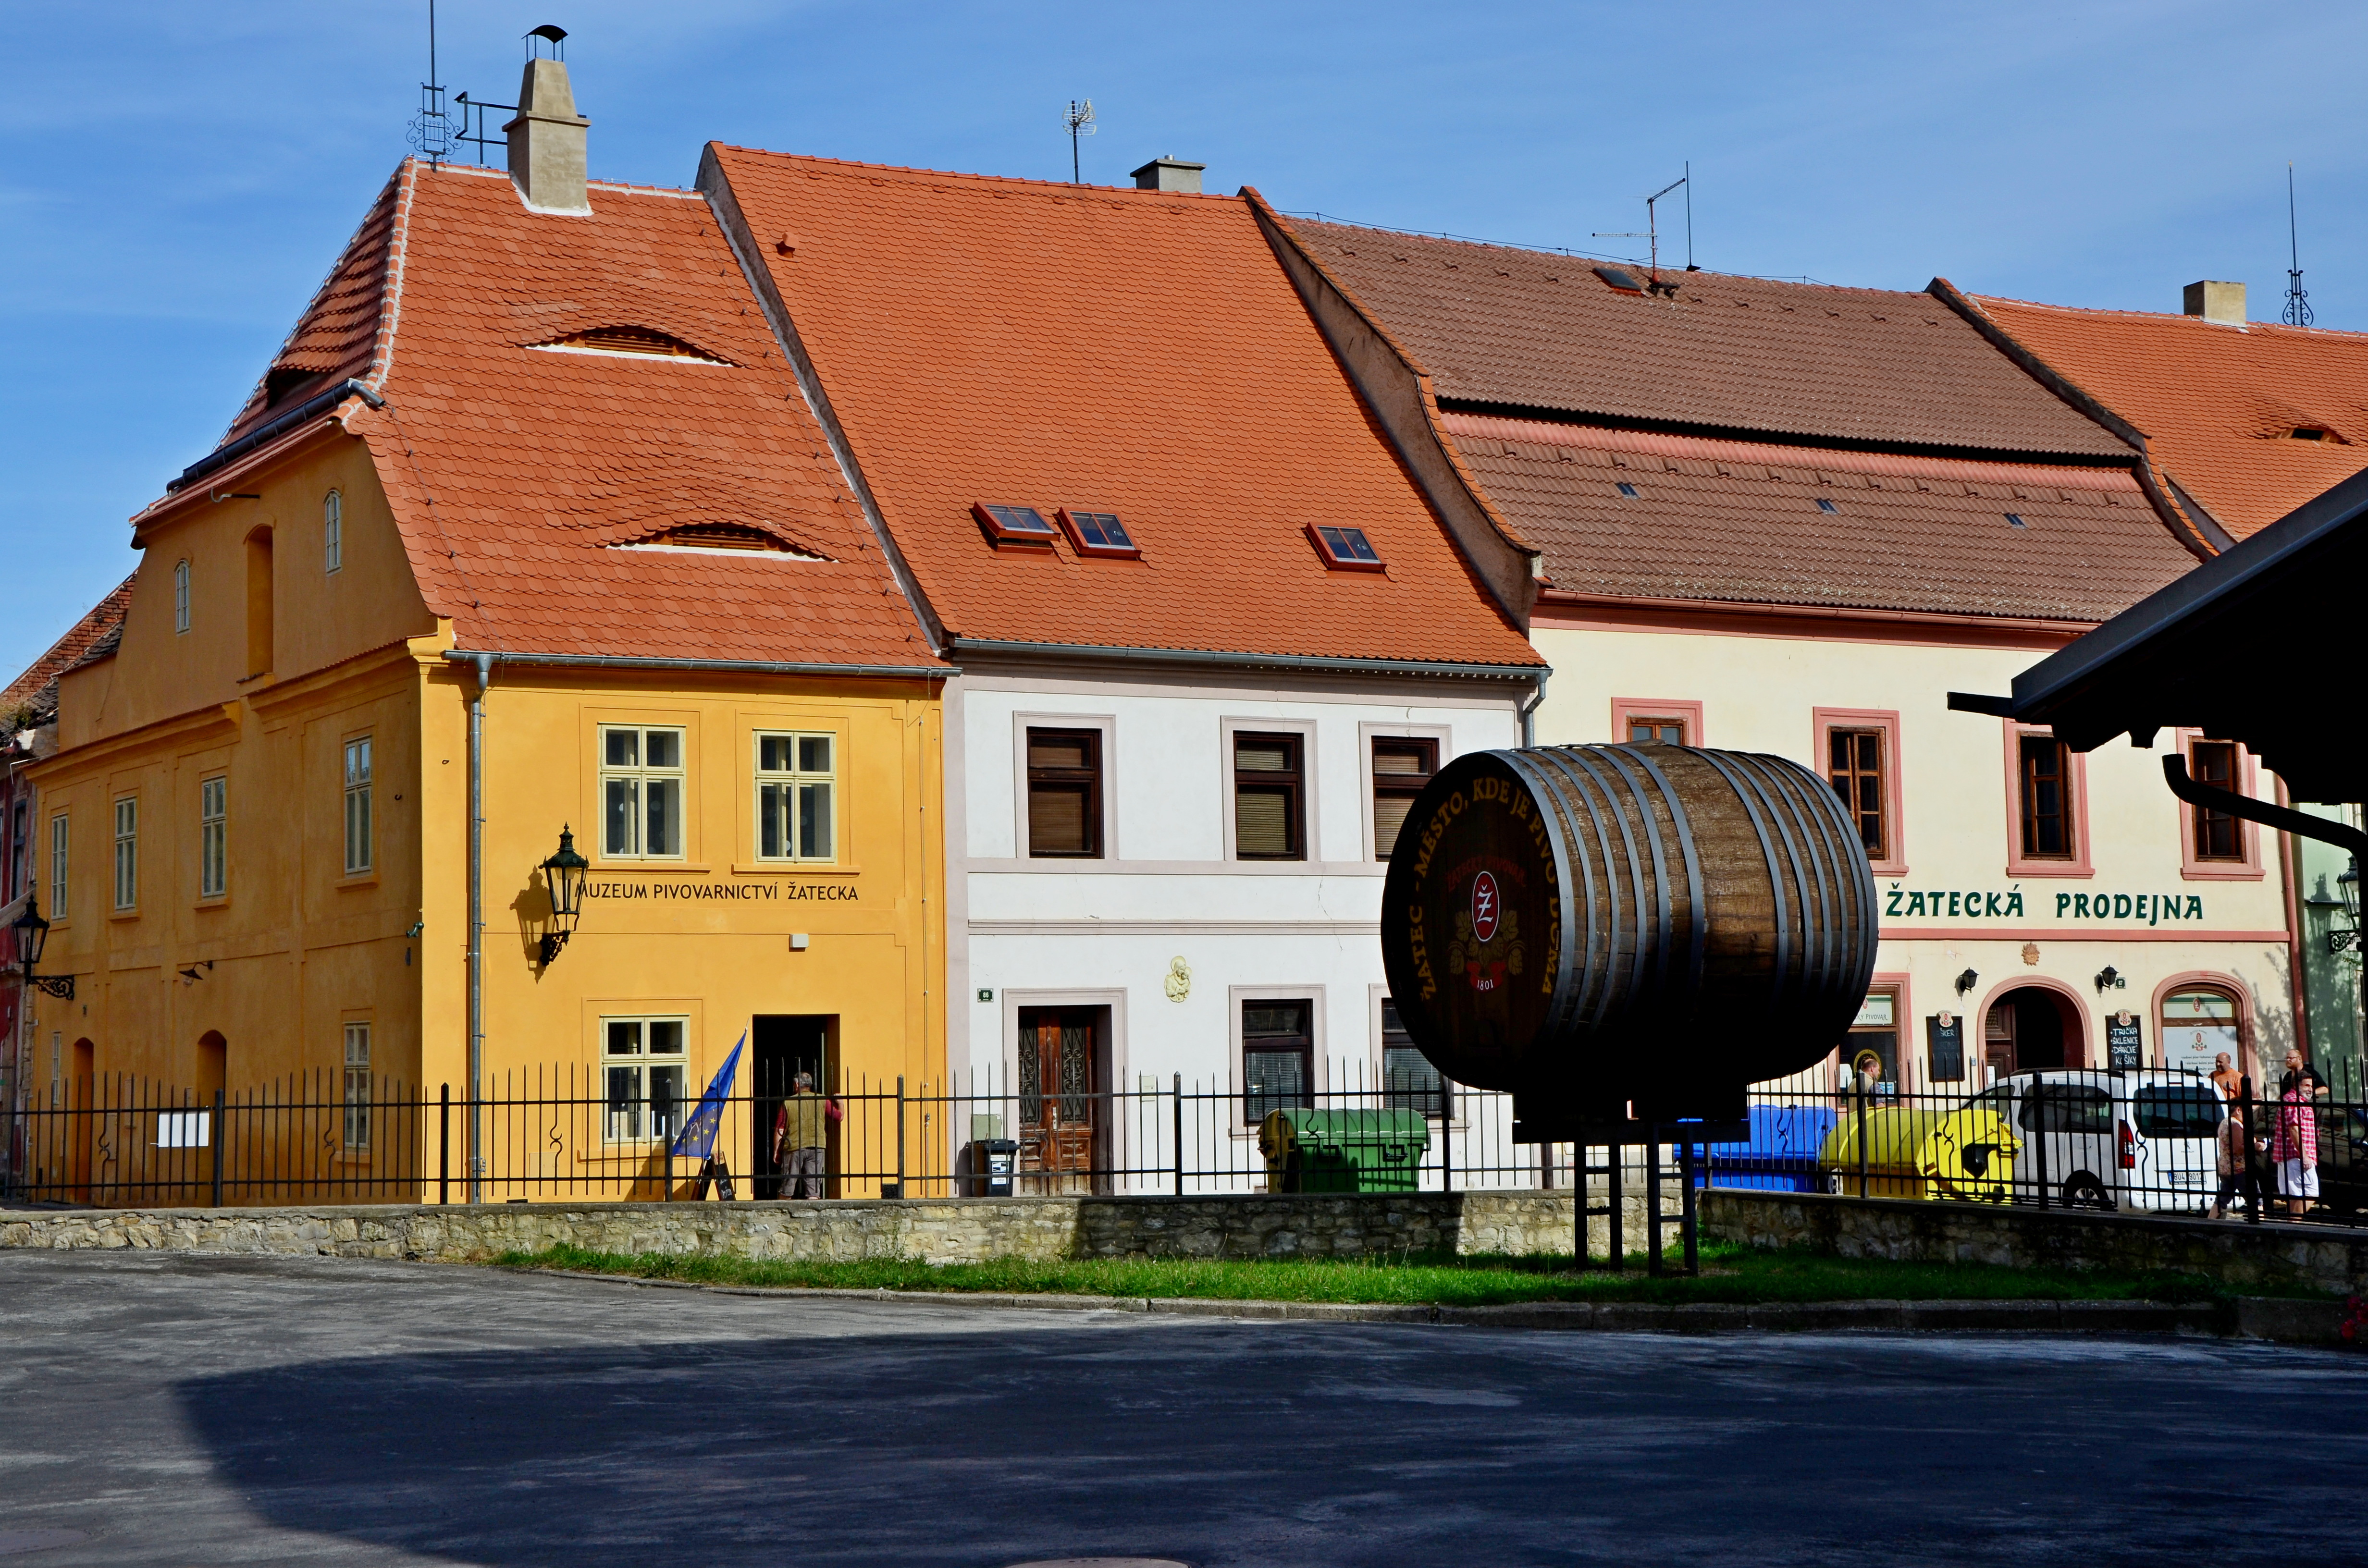 V domě, kde kdysi žil starosta Titlbach je dnes prodejna žateckého pivovaru  zcela vpravo